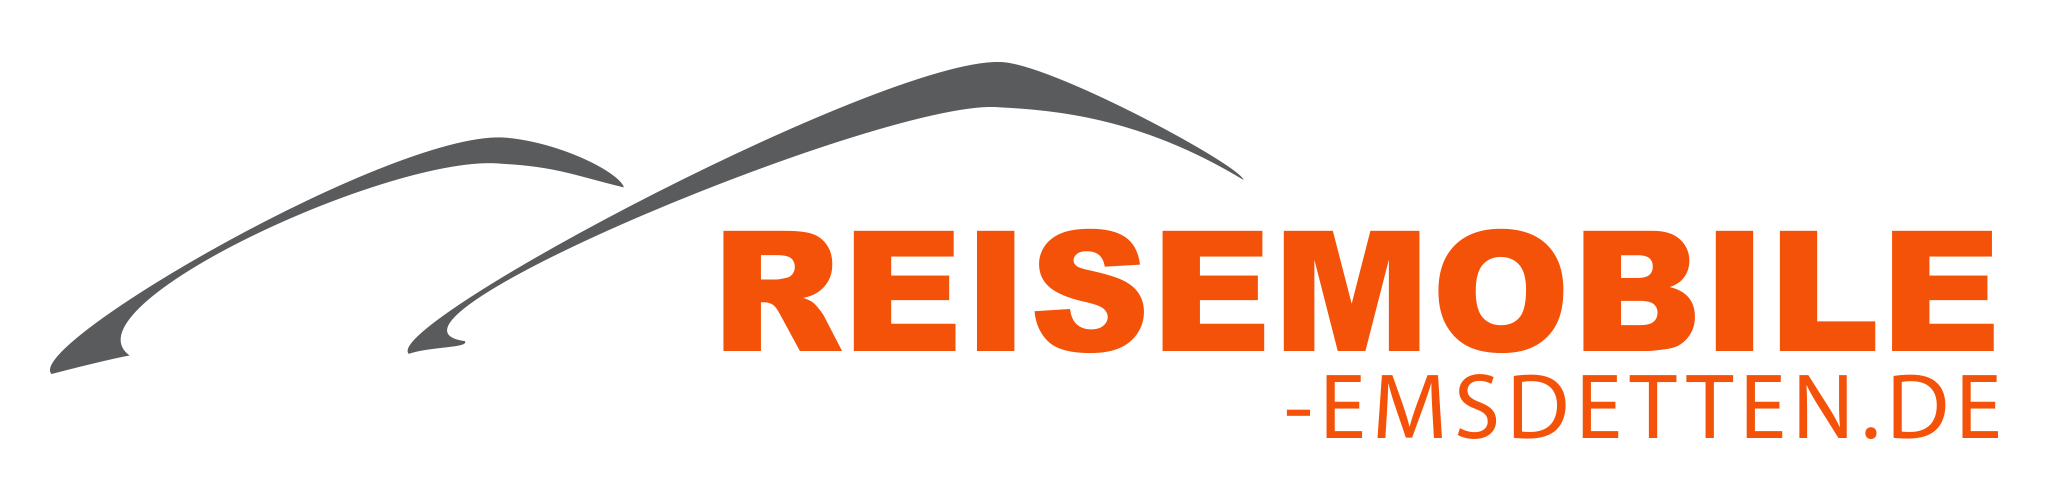 Reisemobile-Emsdetten.de Logo